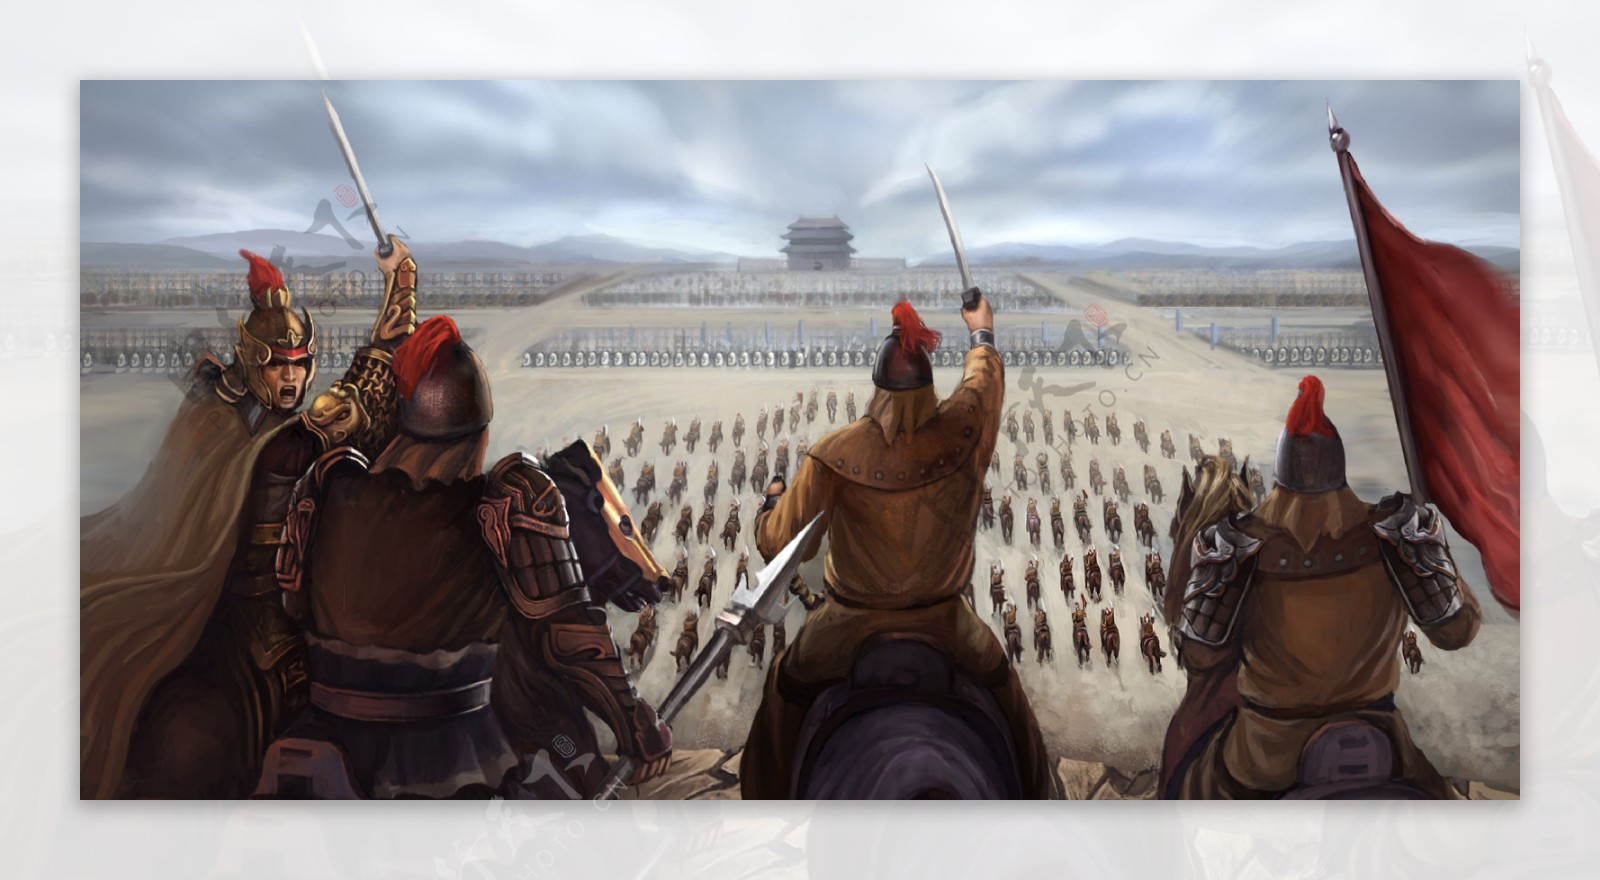 古代战争场面图片